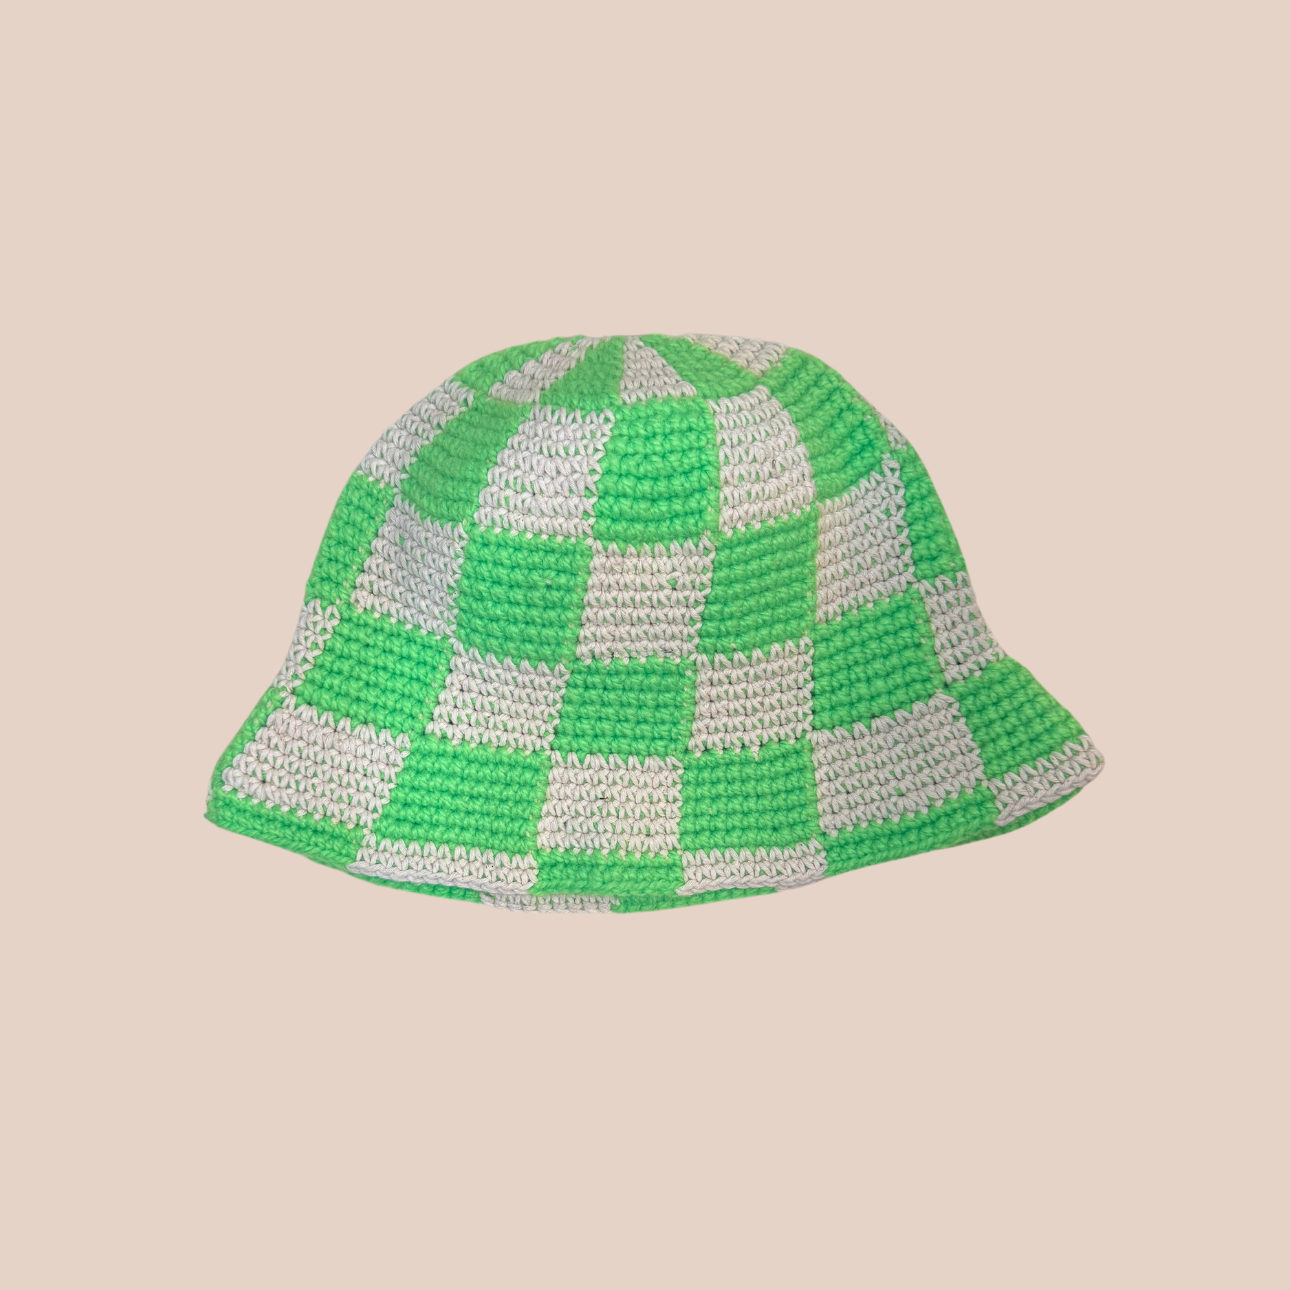 Image du bucket hat motif damier de Maison Badigo, bucket hat (bob) blanc et vert unique et tendance